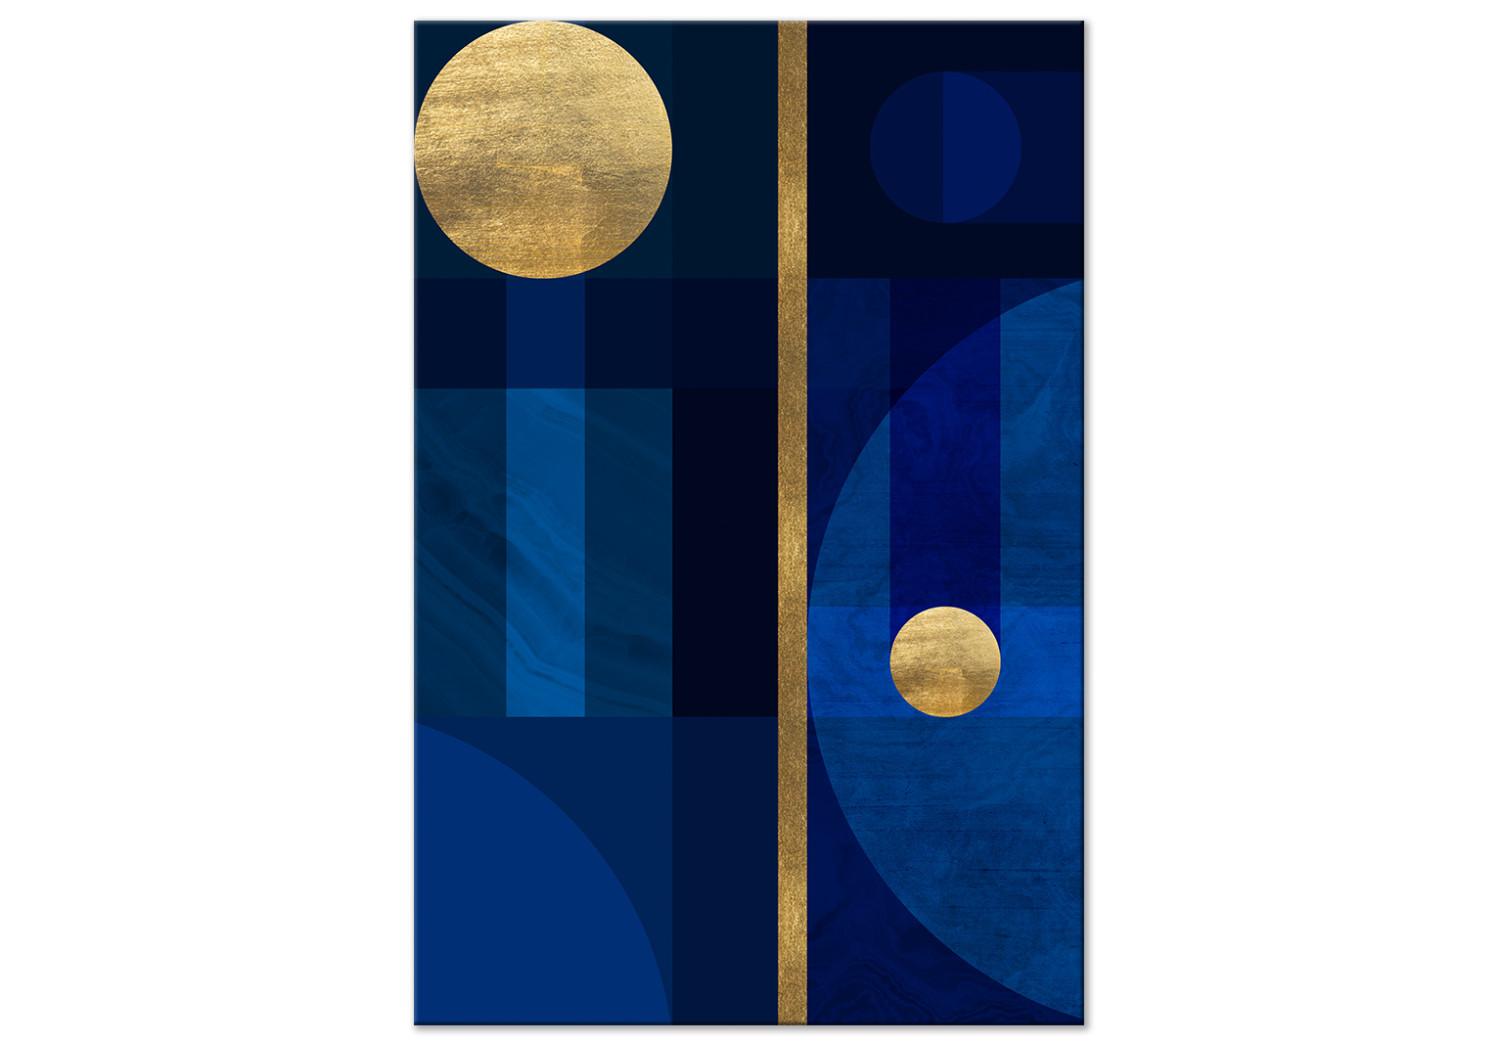 Cuadro moderno Círculos dorados (1 pieza) - forma geométrica en tono azul clásico